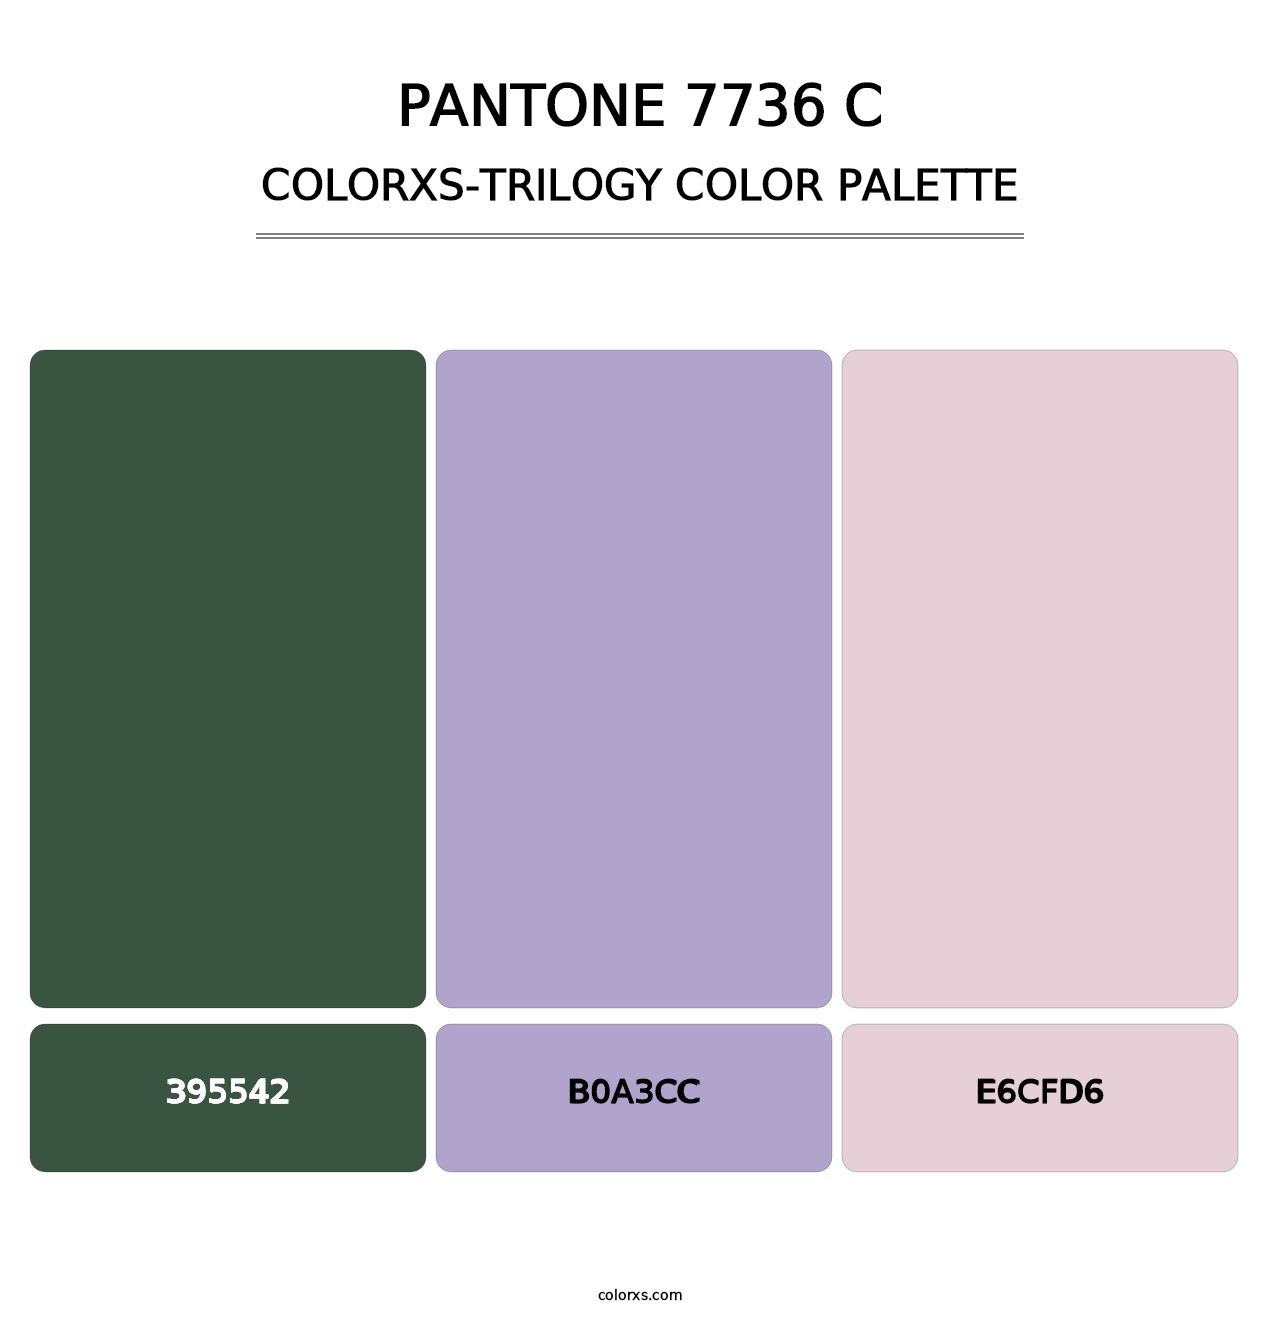 PANTONE 7736 C - Colorxs Trilogy Palette